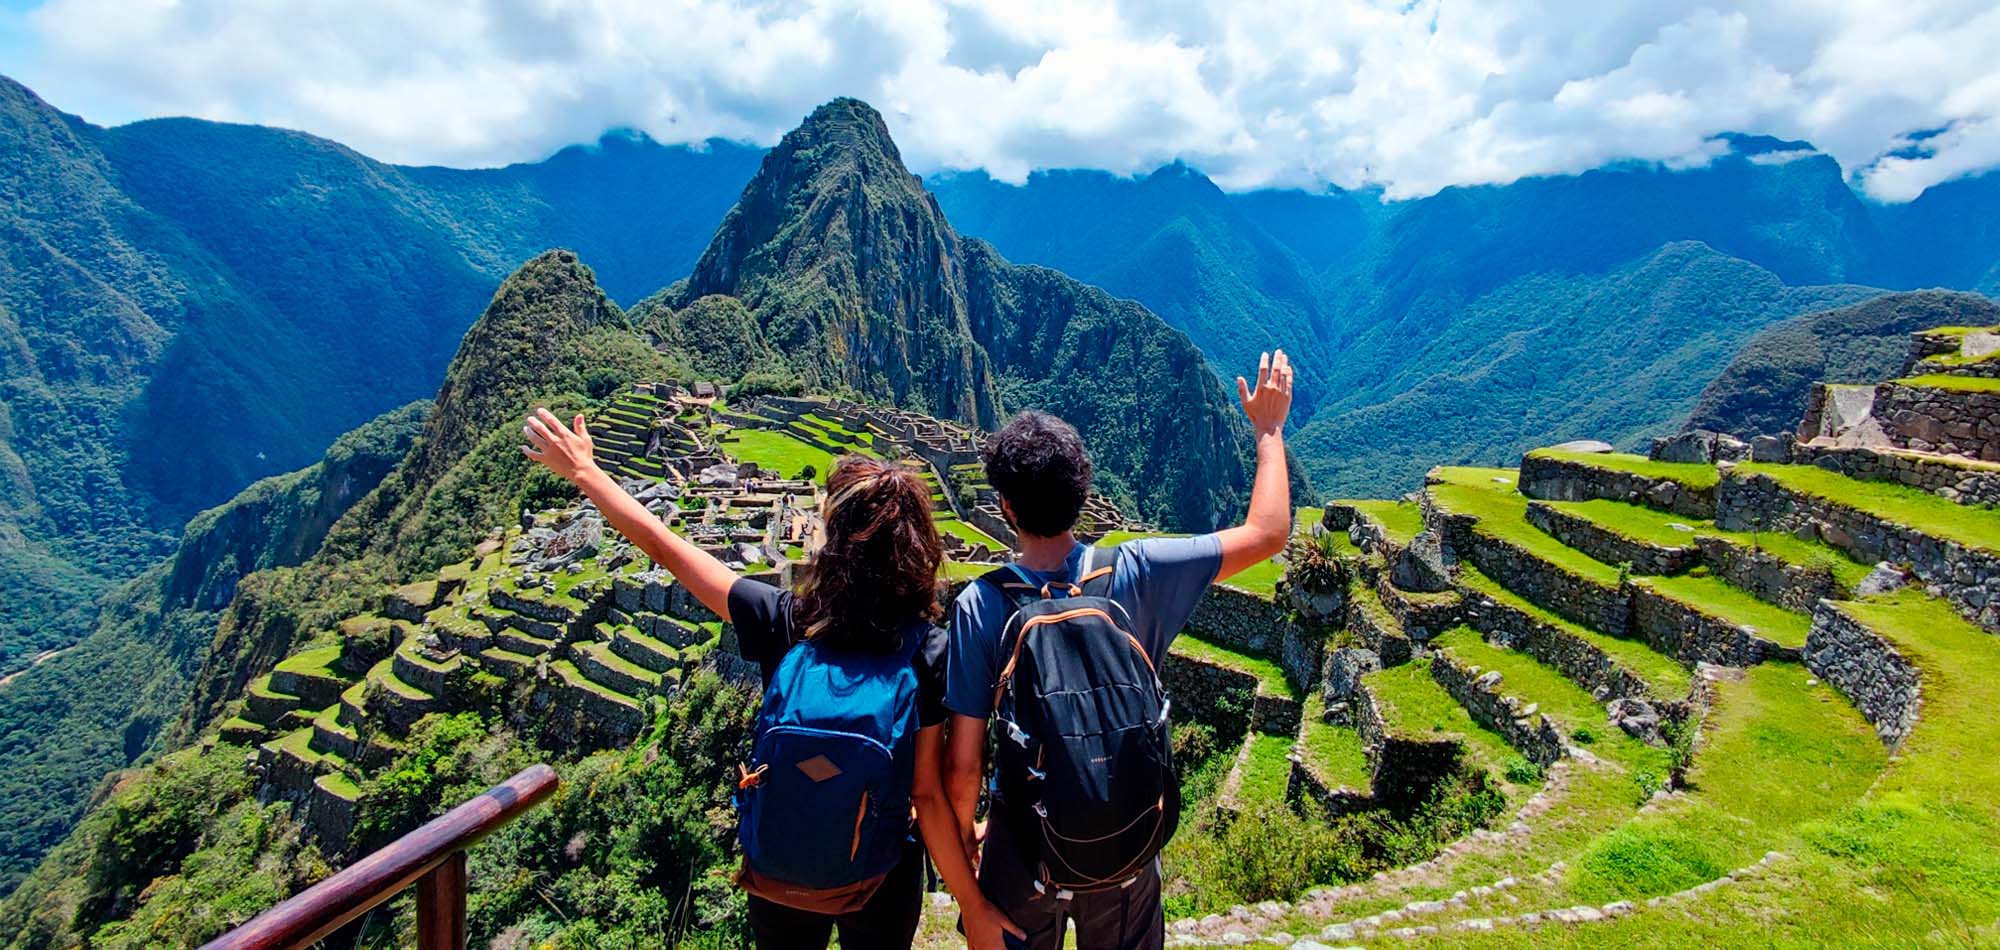 Inca Trail to Machu Picchu 1 day - Incatrailhikeperu